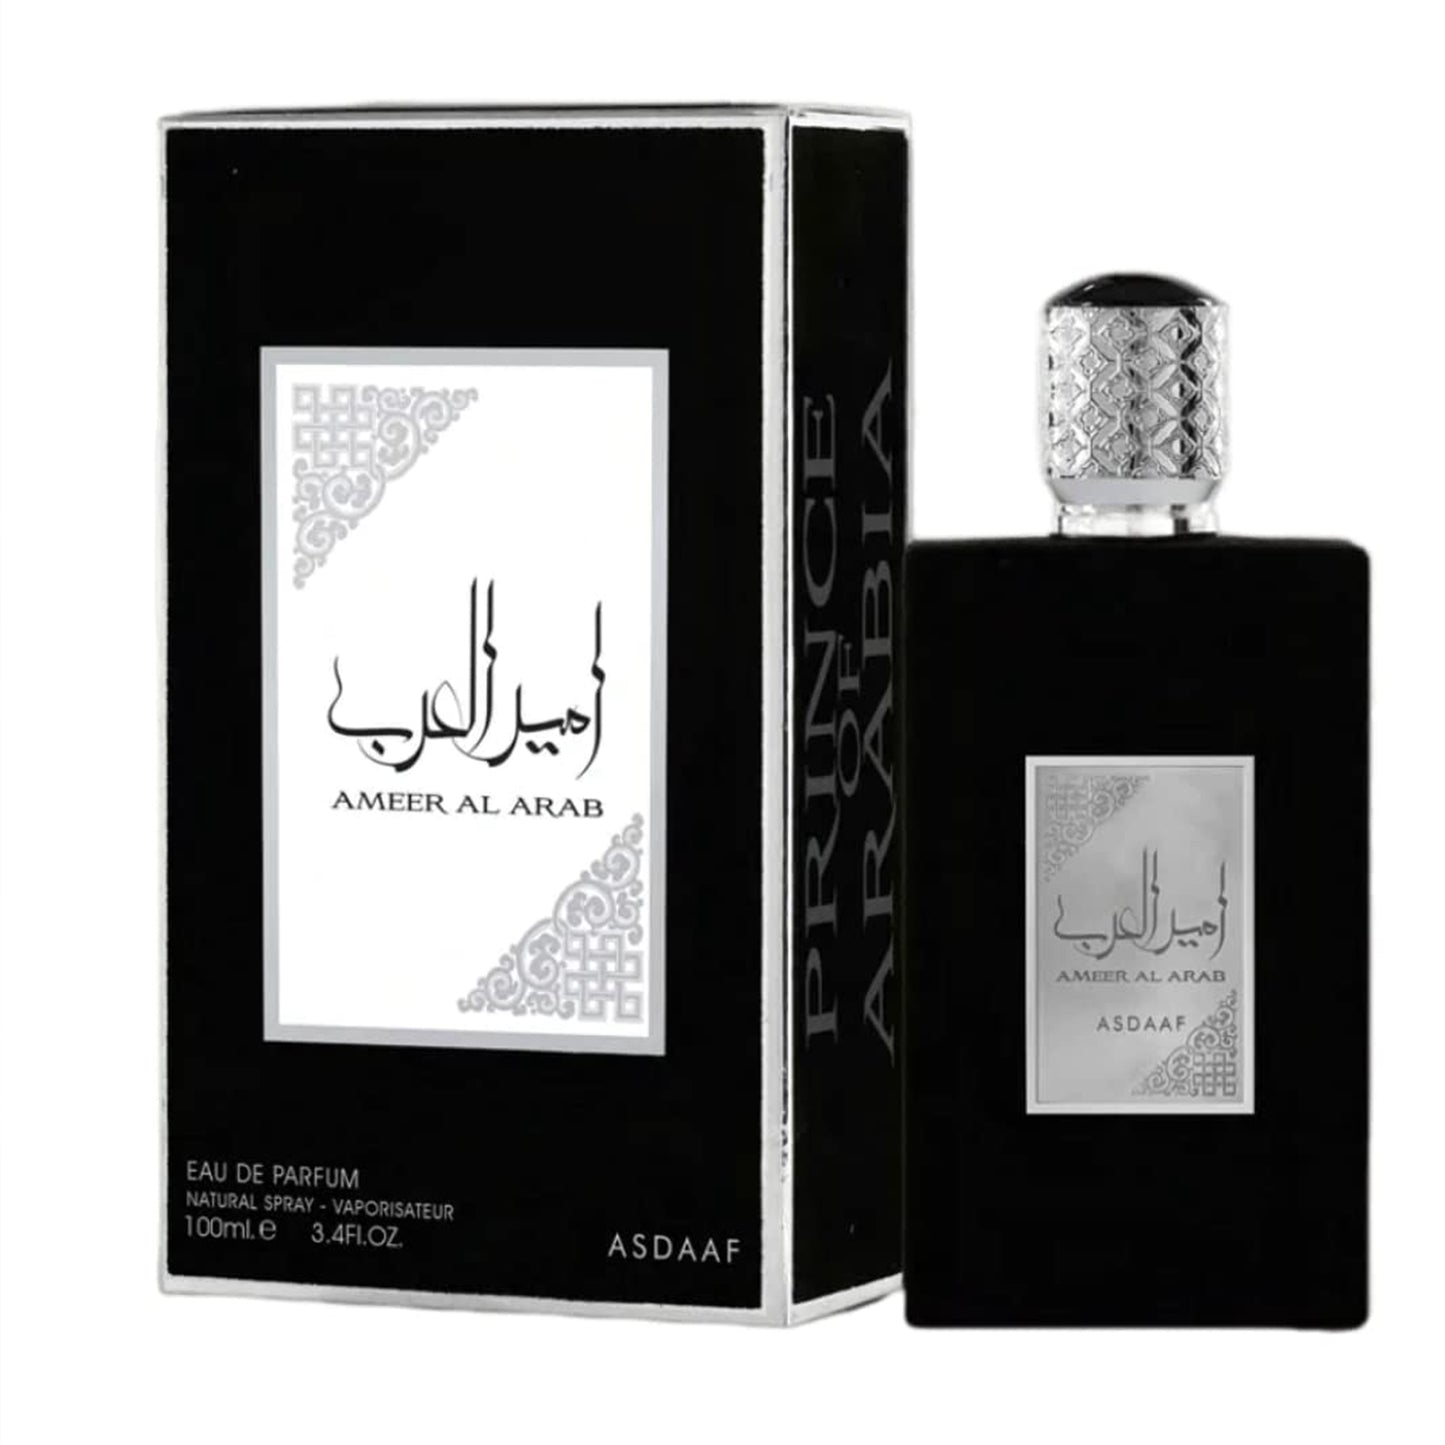 (Black) Ameer Al Arab (Prince of Arabia) - EDP 100ml by Asdaaf - Mens - Spicy, woody, resinous